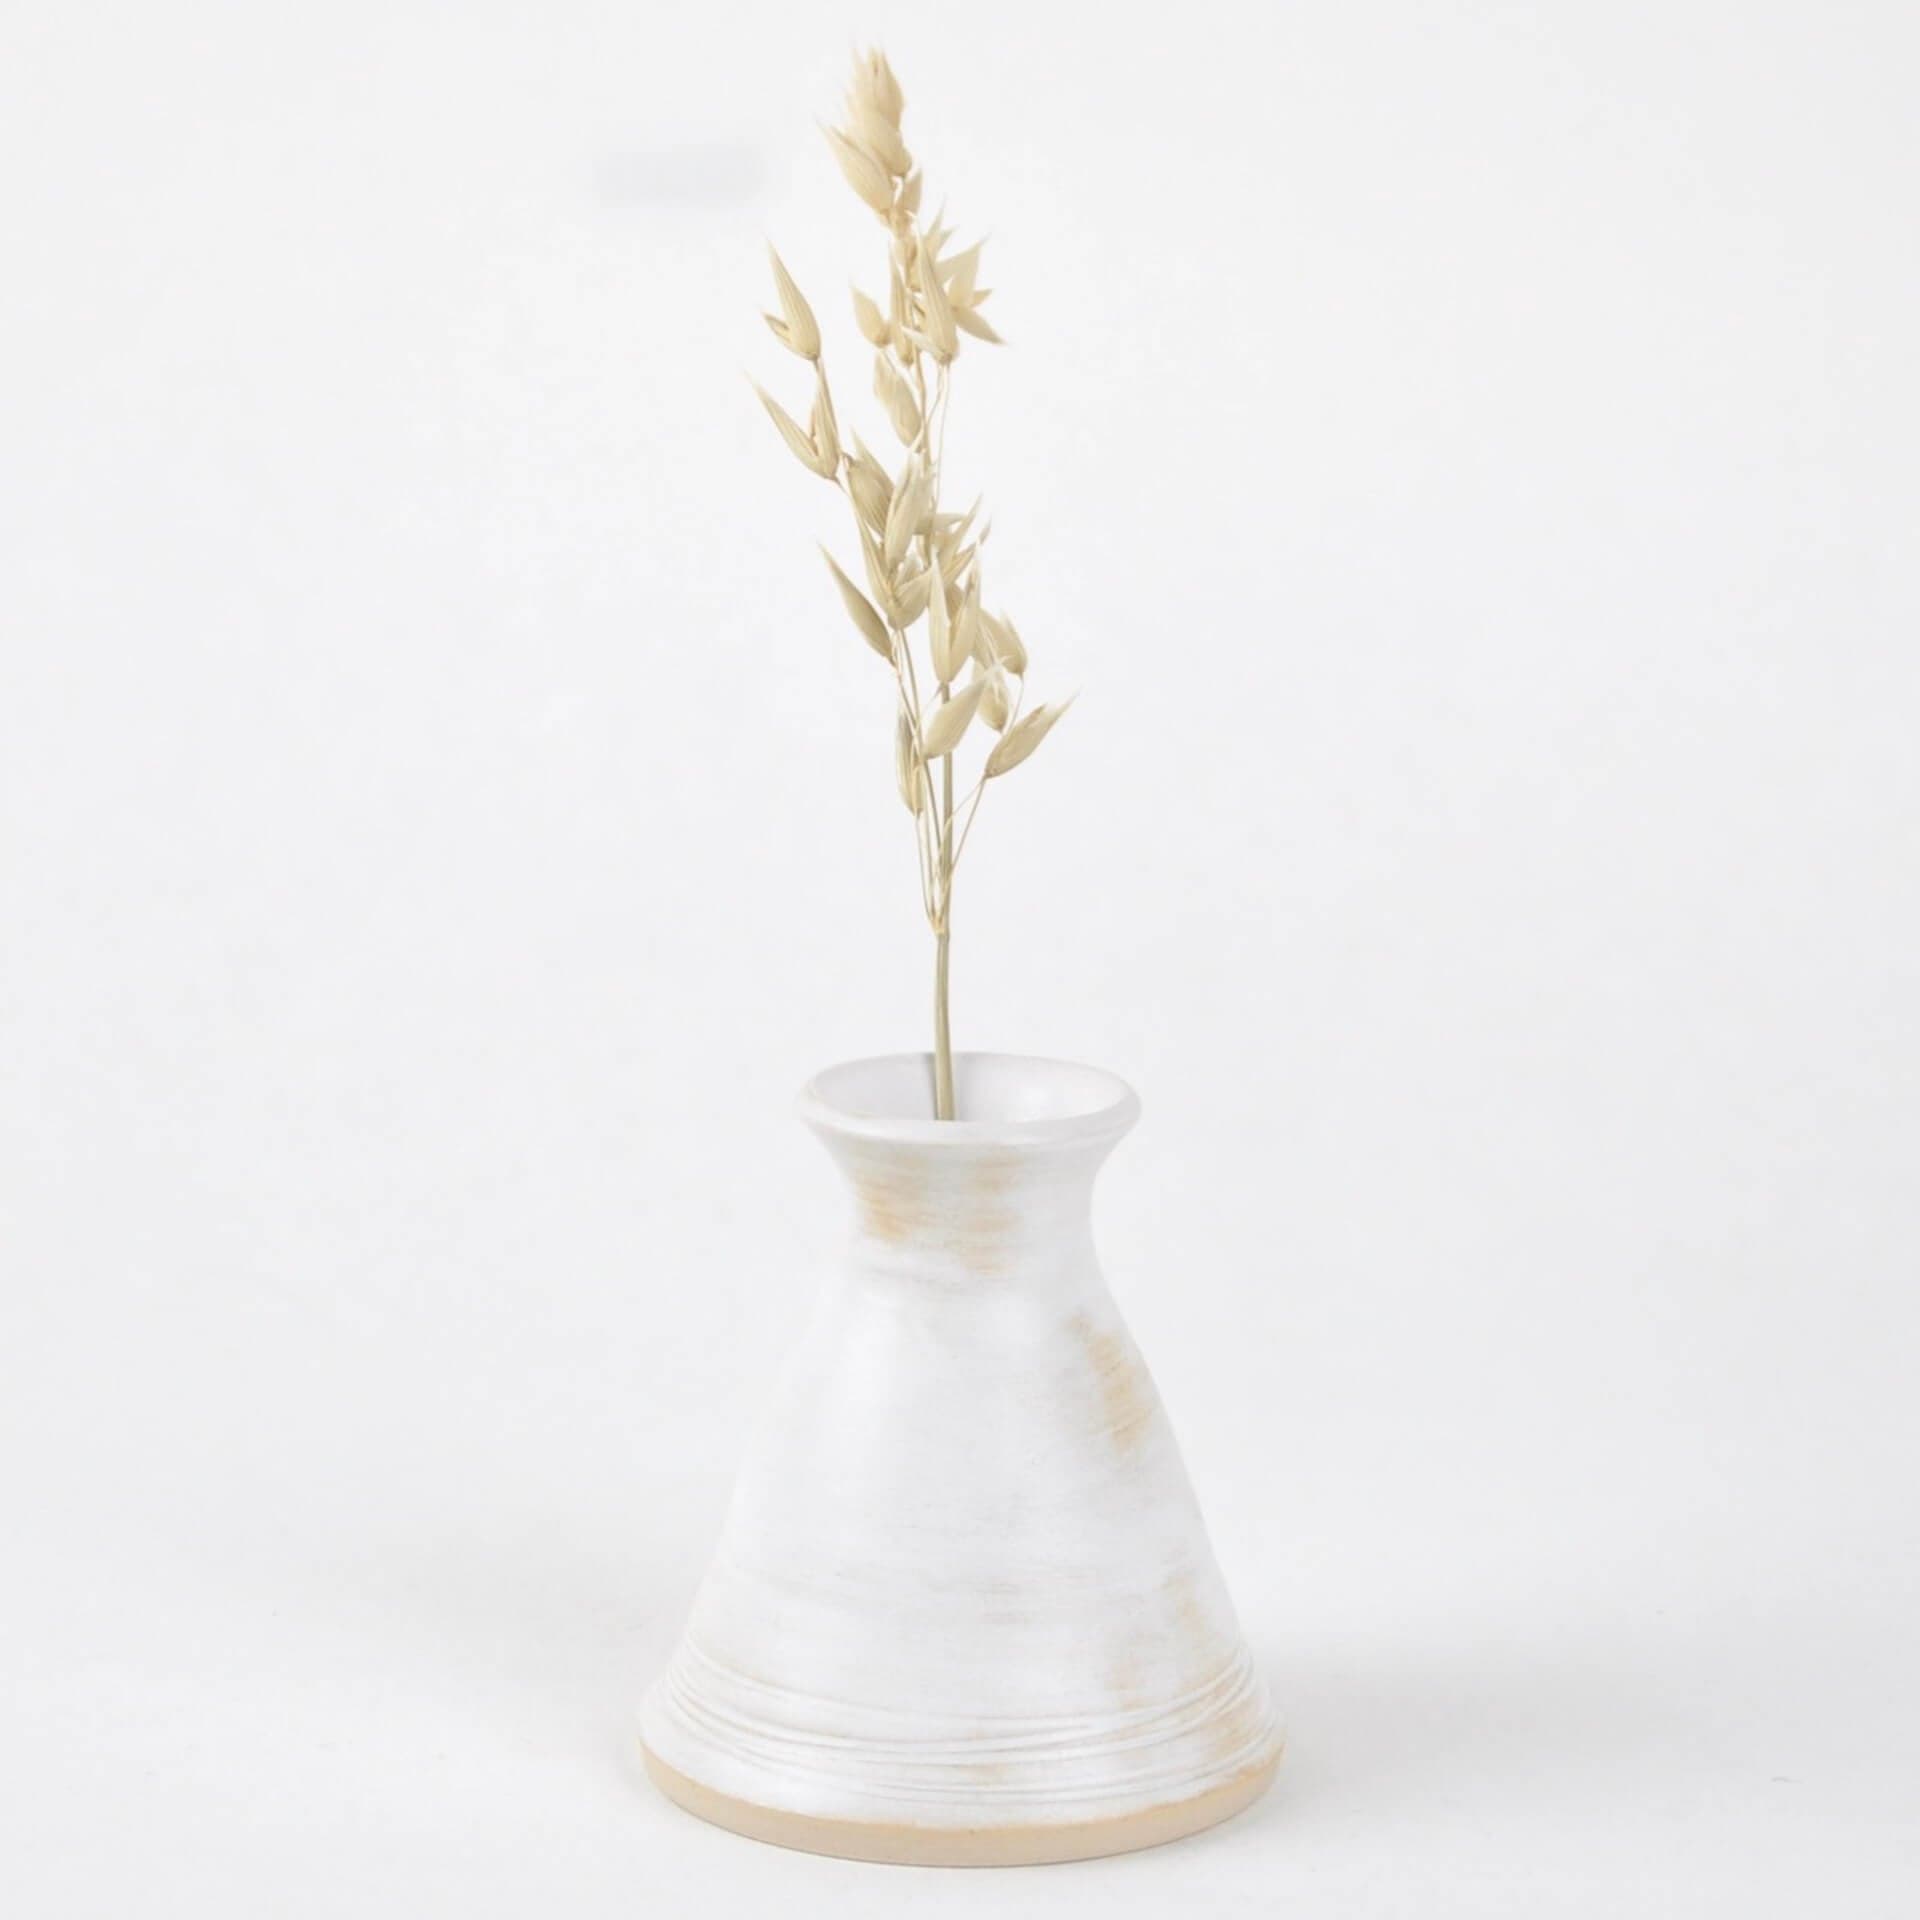 Hunkydory Ceramics Ceramics Soft White Candle Holder / Vase